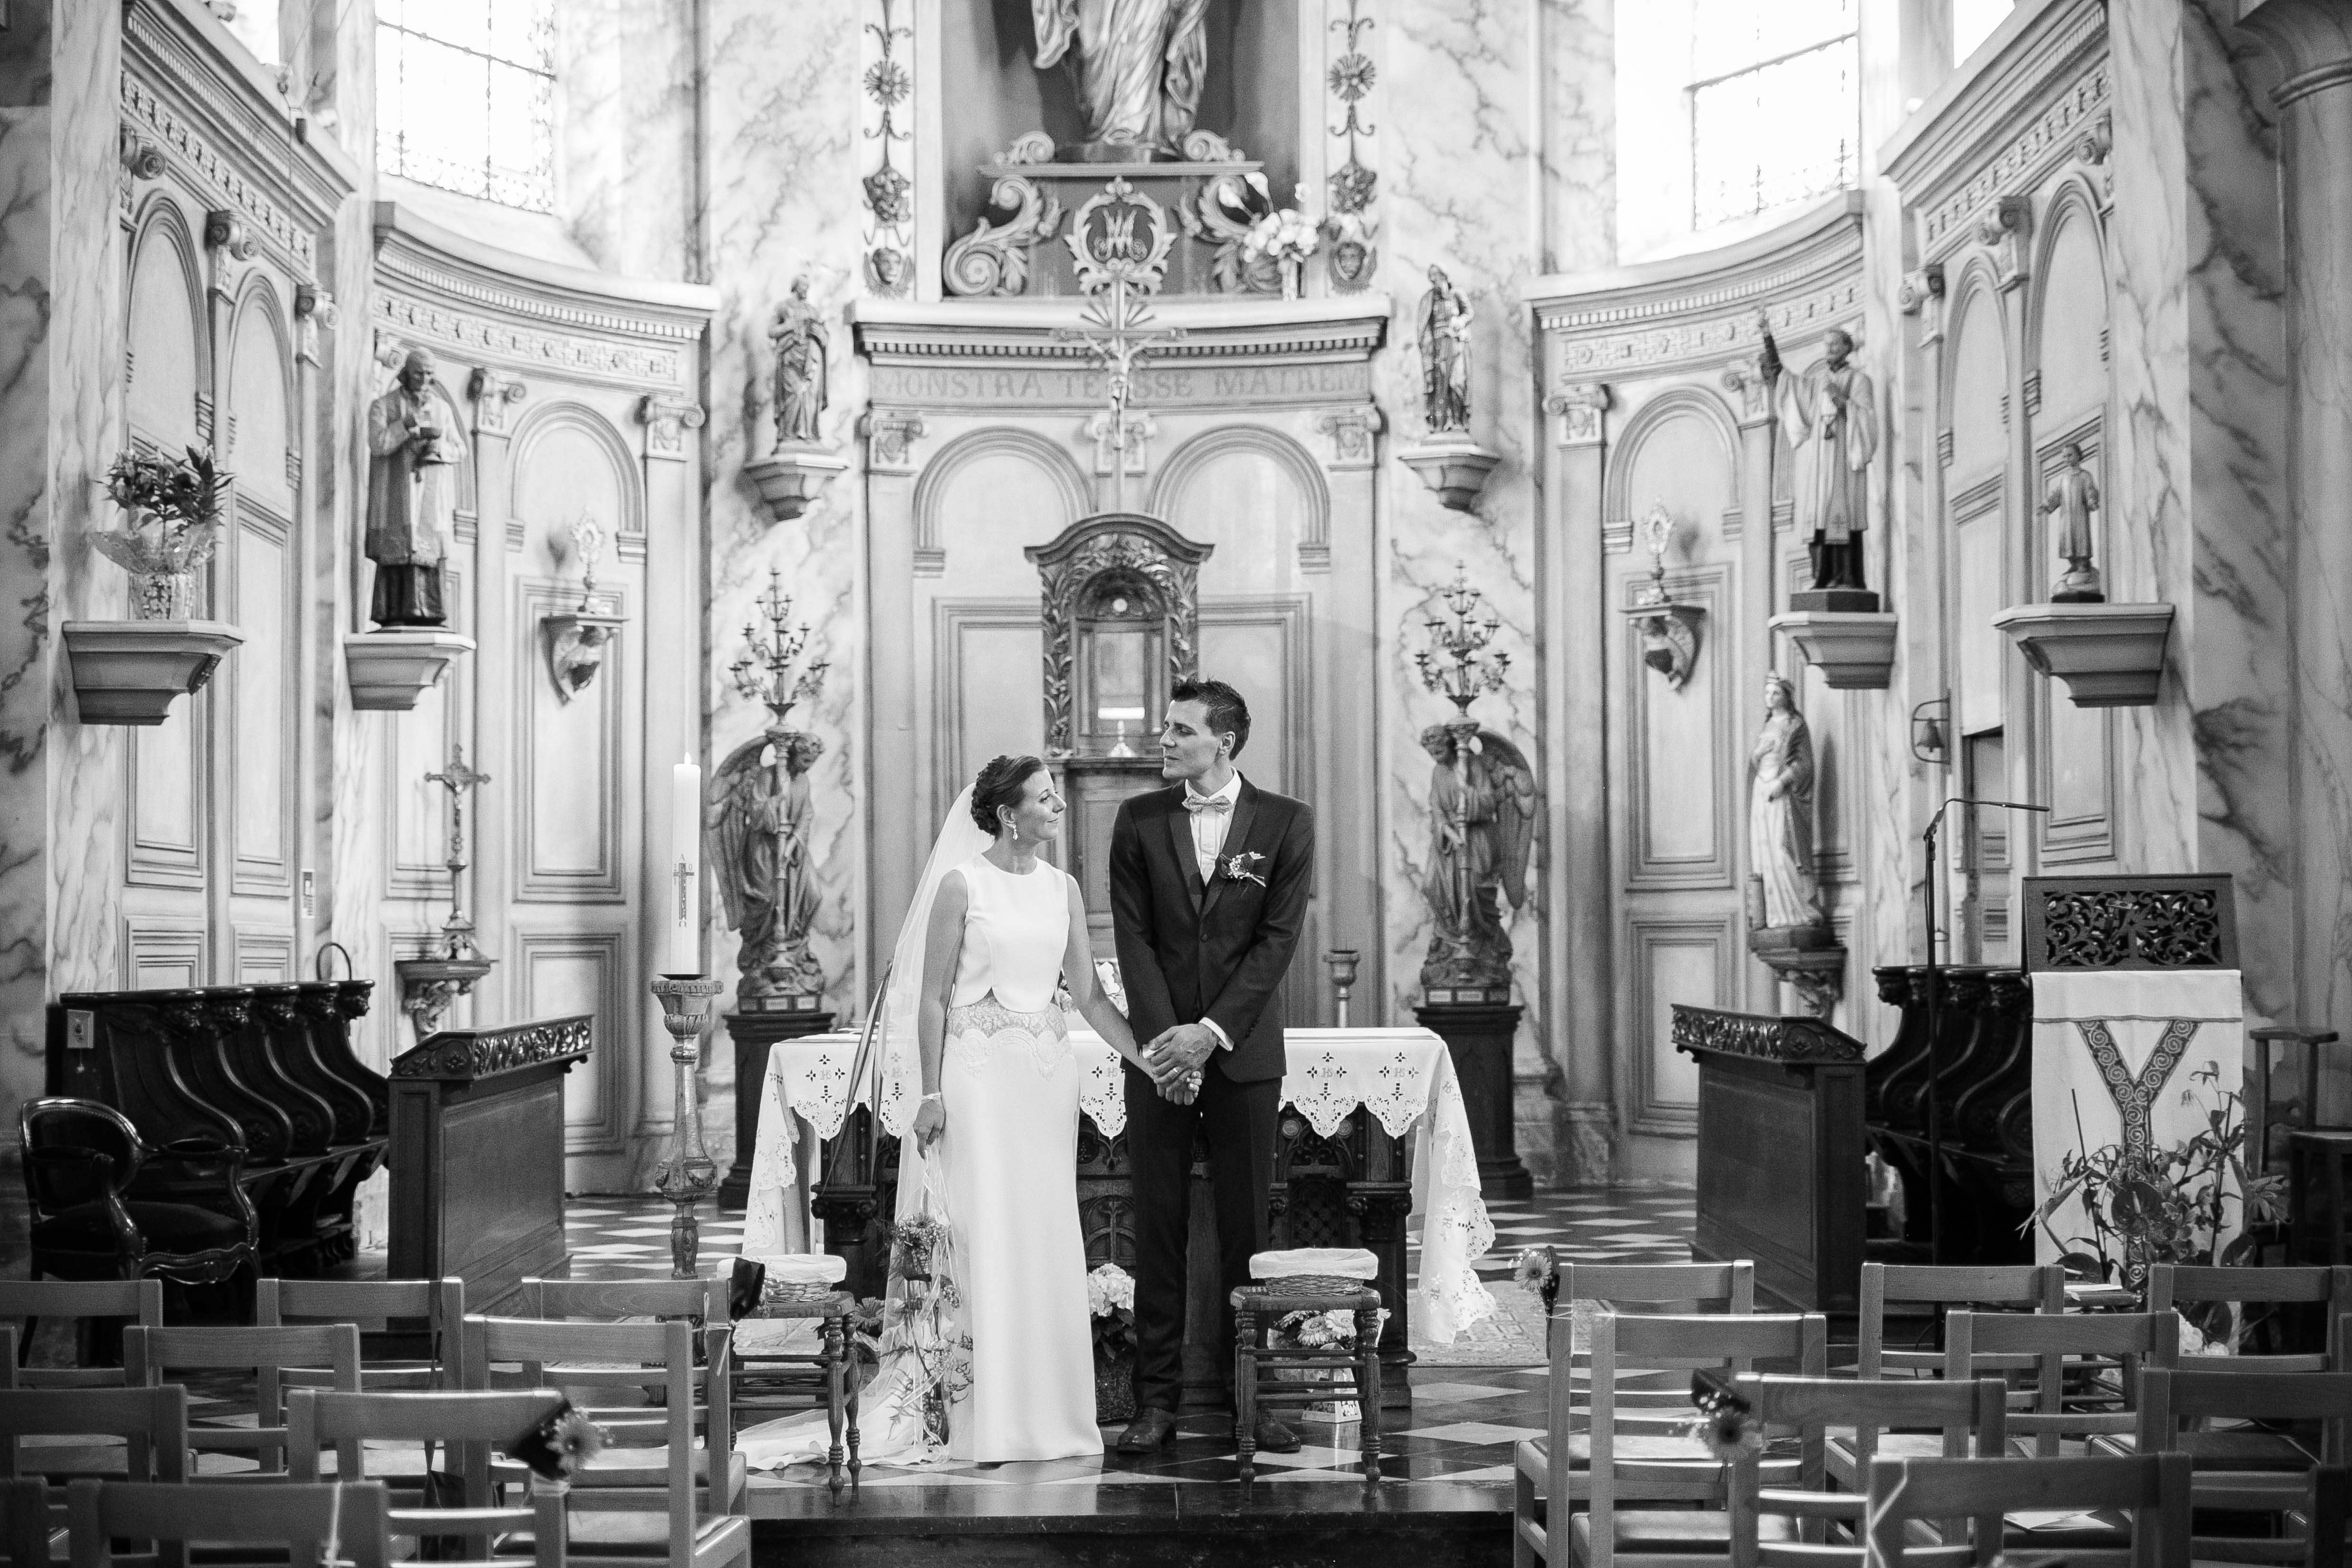 Mariage au chateau de rebreuve ranchicourt-nord pas de calais-Nord-mariage religieux